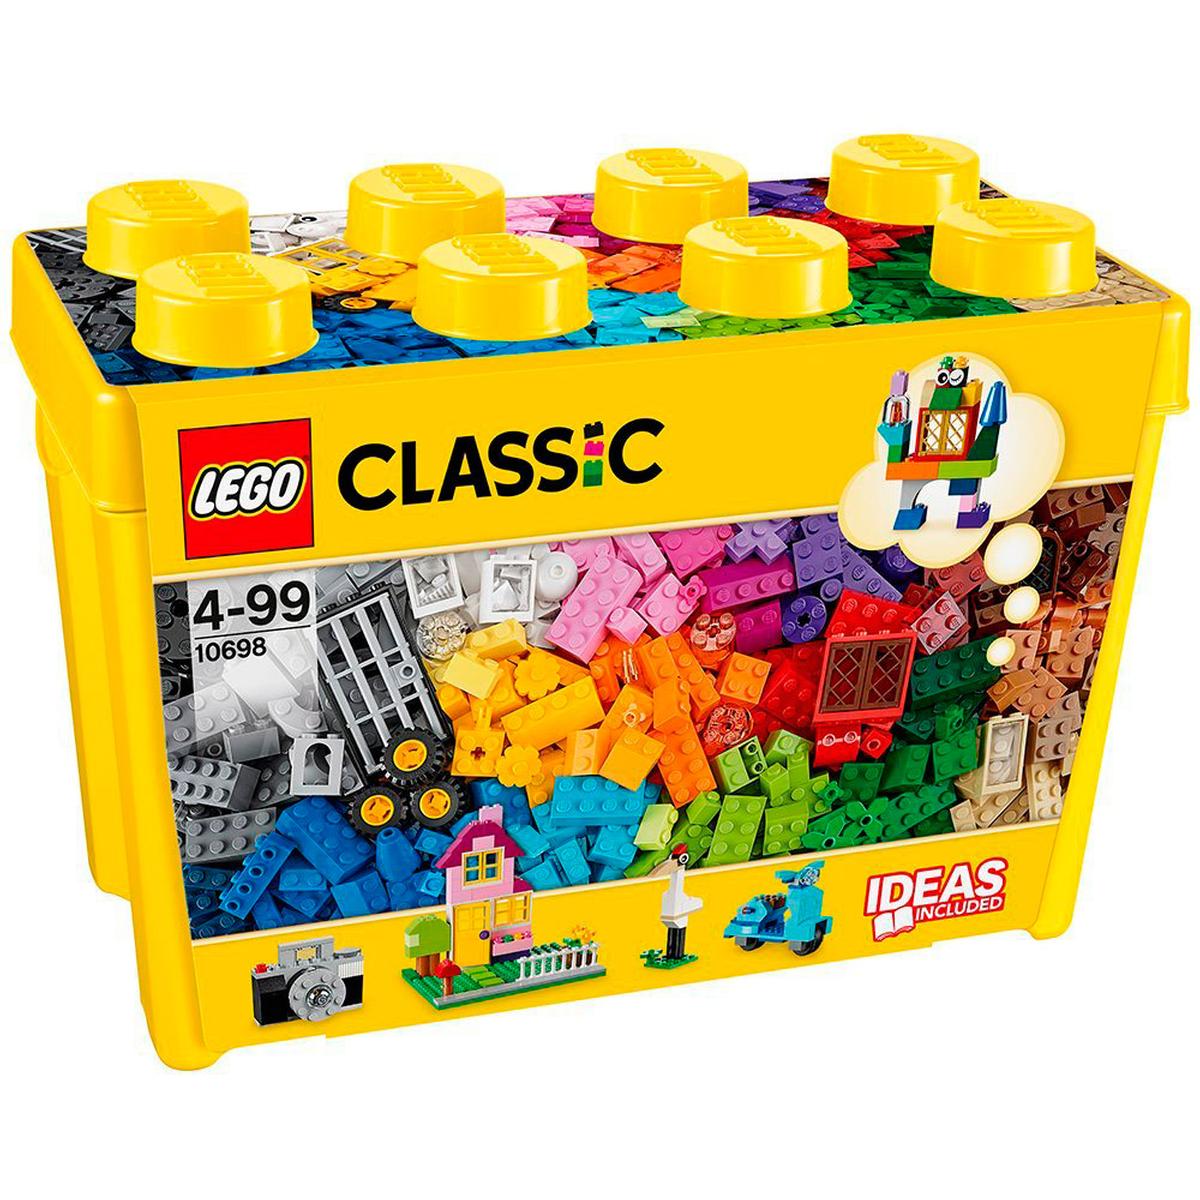 Caja de ladrillos creativos grandes y clásicos de la marca LEGO 10698.